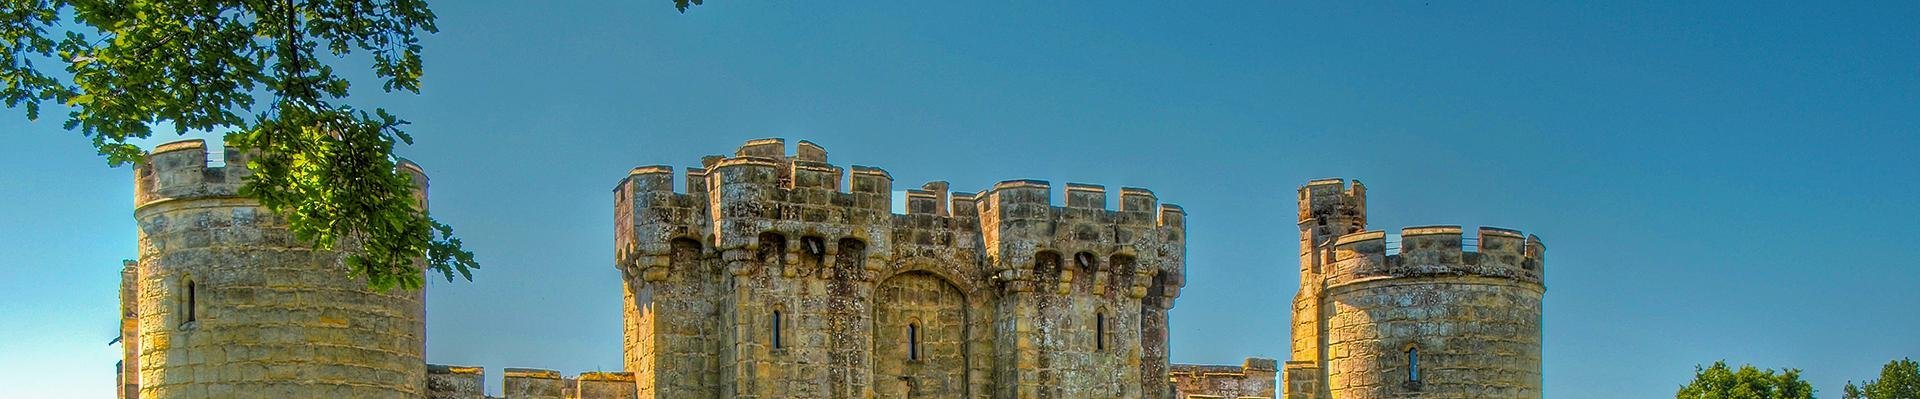 Bodiam Castle, Engeland